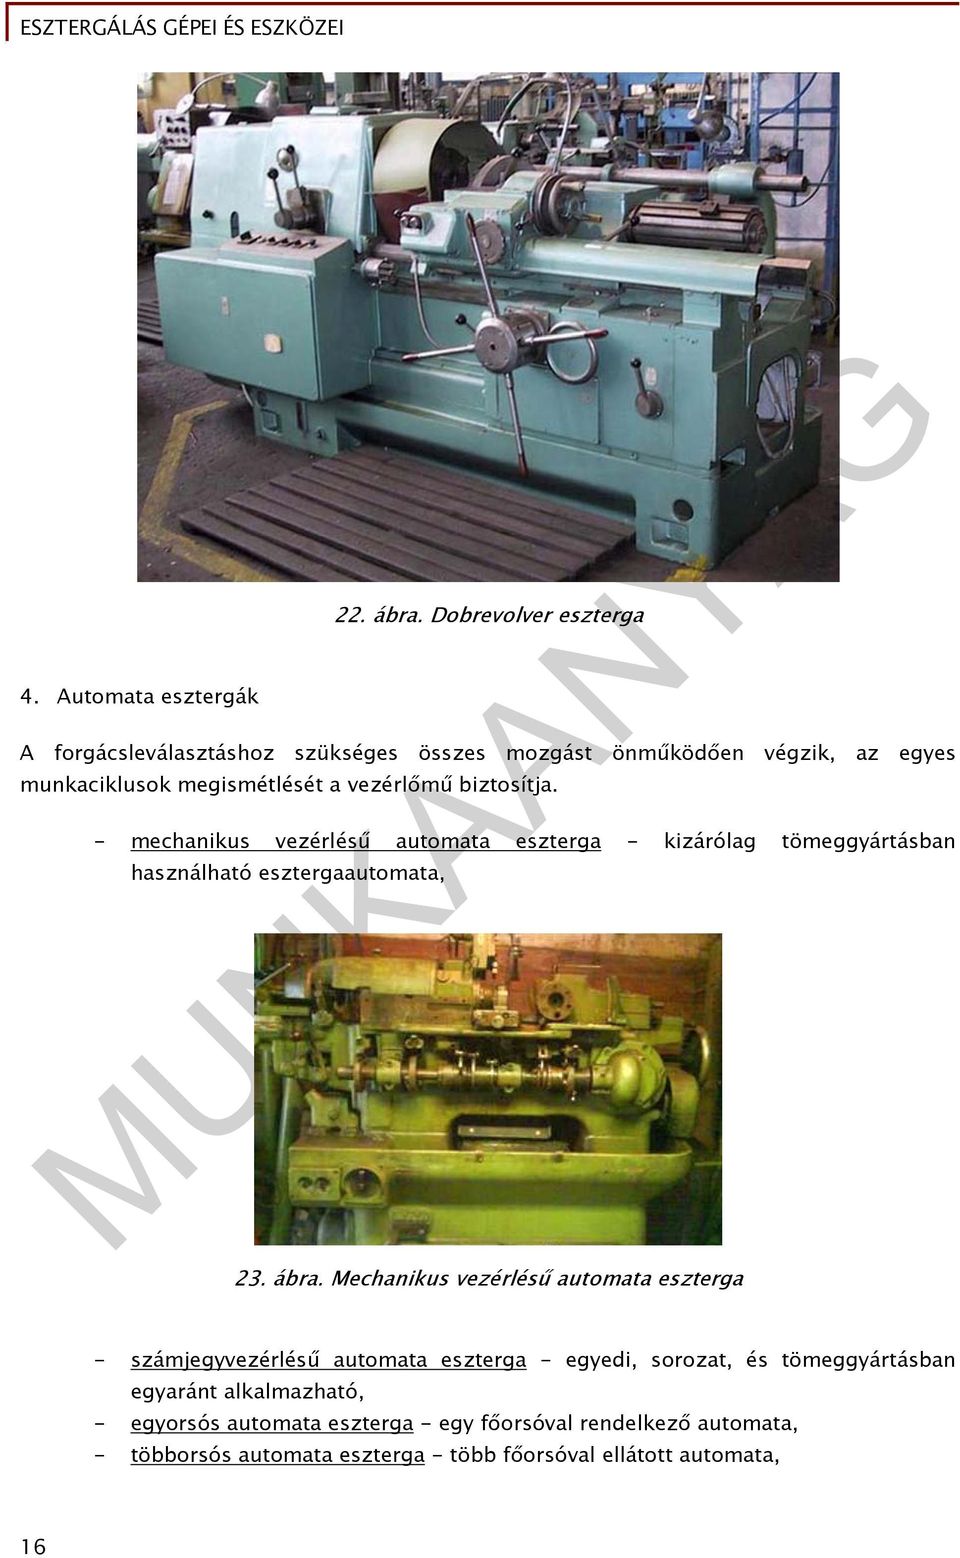 biztosítja. - mechanikus vezérlésű automata eszterga - kizárólag tömeggyártásban használható esztergaautomata, 23. ábra.